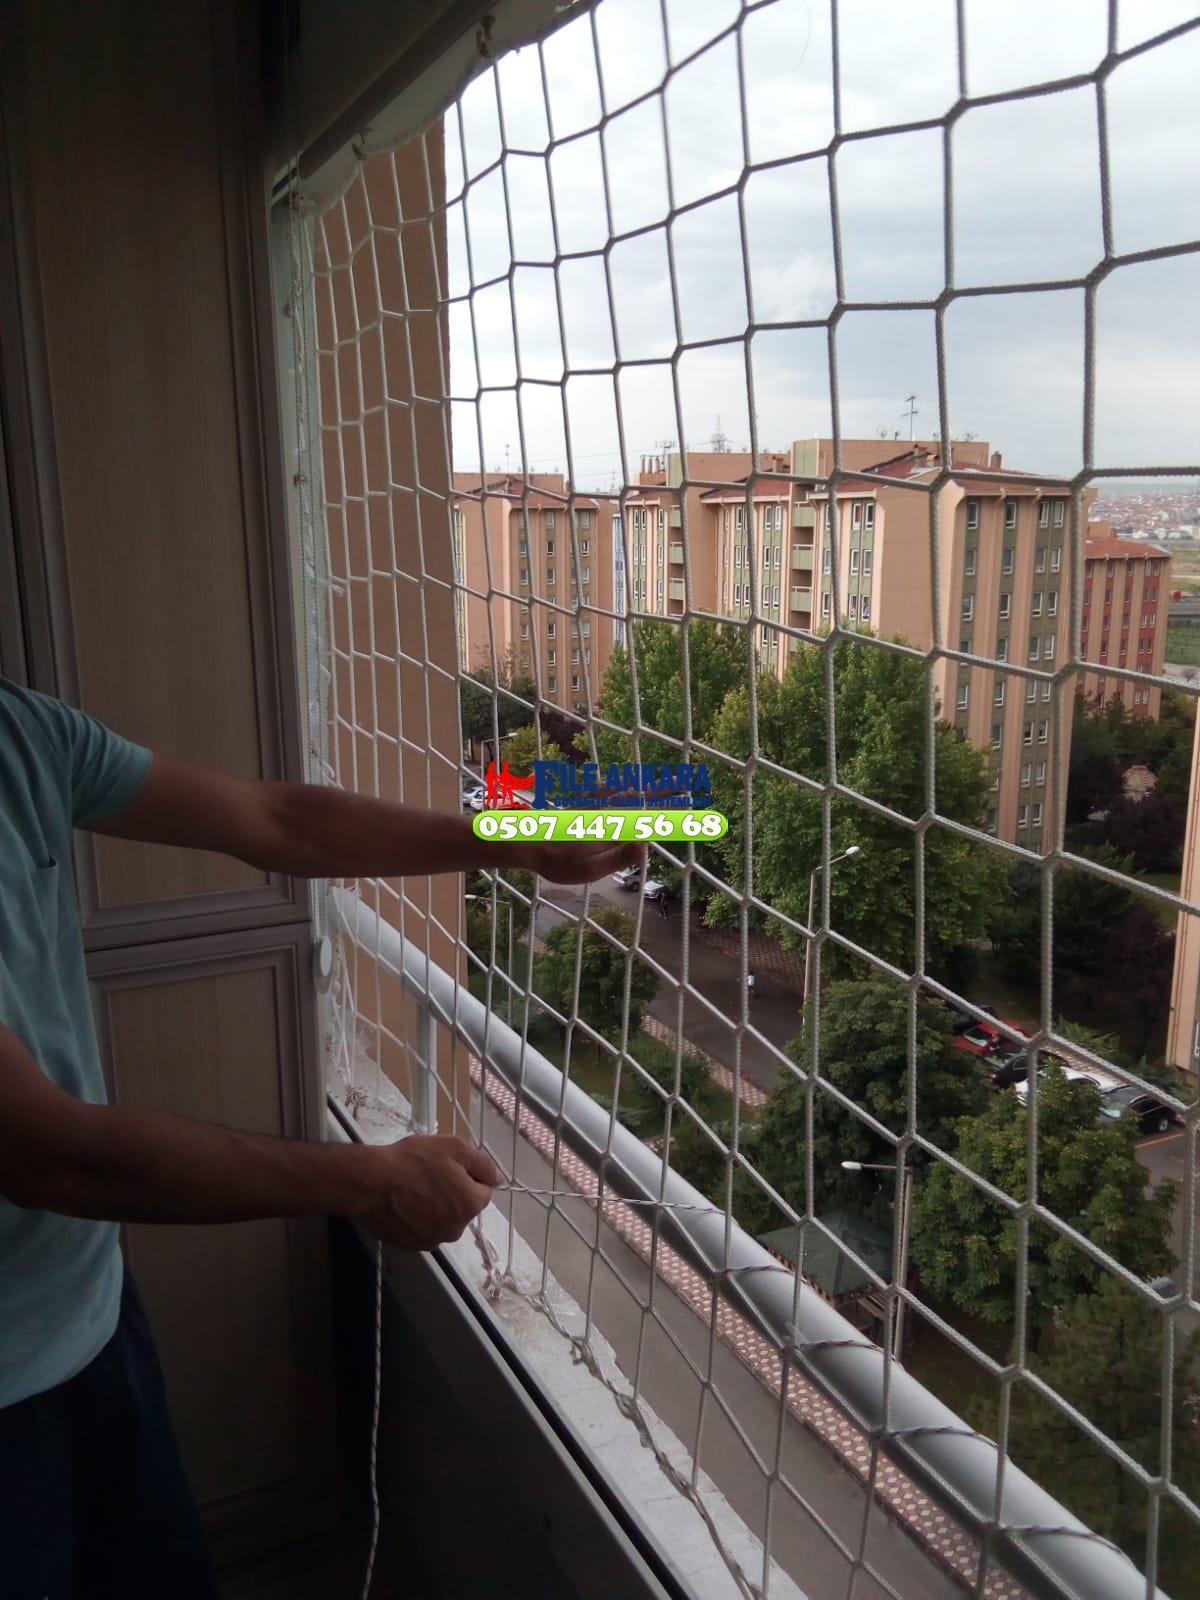 Ankara Kazan Balkon  koruma filesi - Merdiven filesi - En ucuz balkon güvenlik filesi satış ve montajı 0507 447 56 68